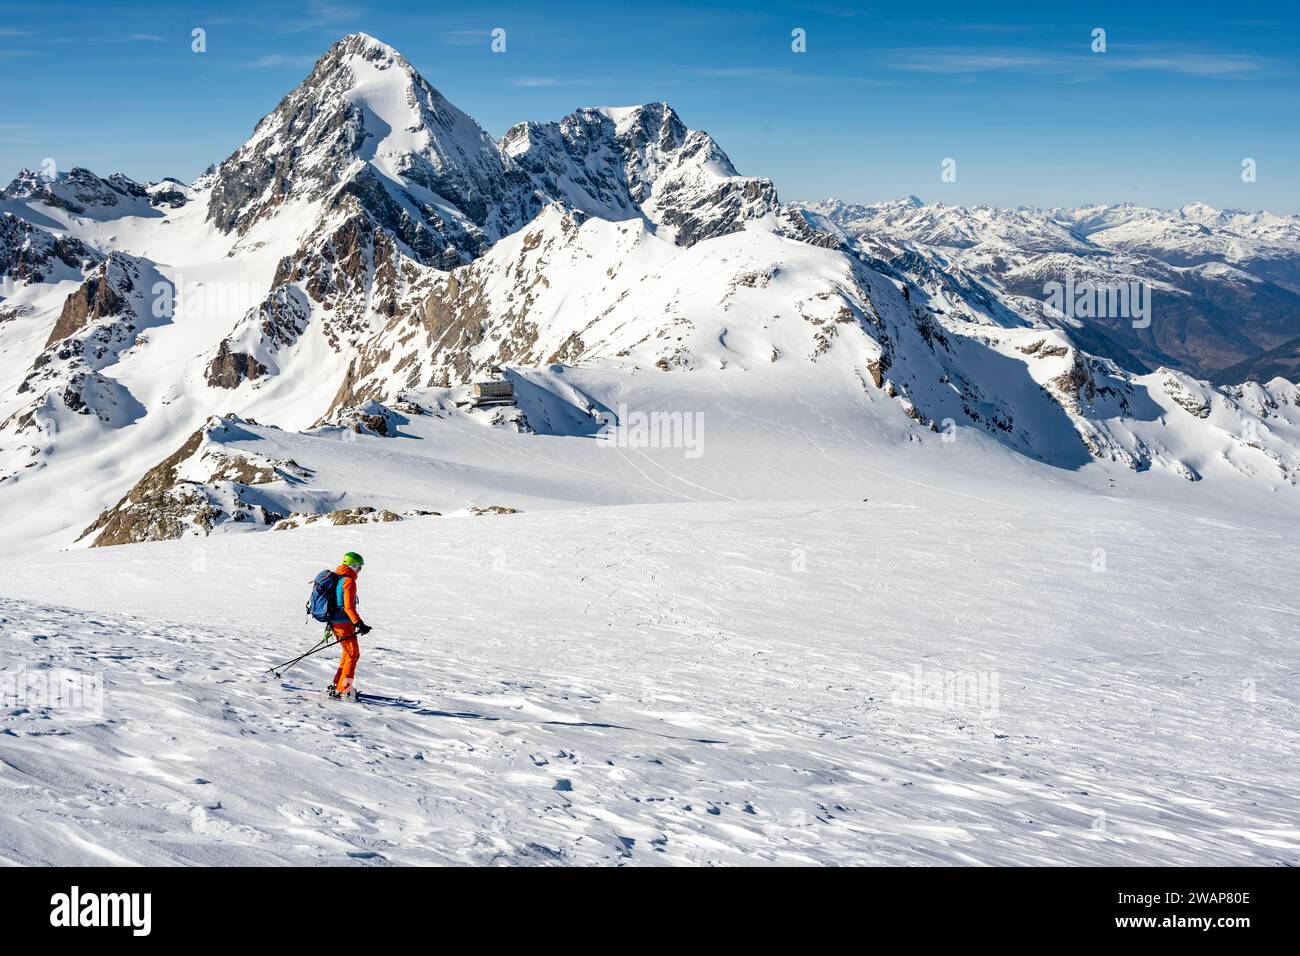 Bergsteiger erkunden eine schneebedeckte Landschaft mit imposanten Berggipfeln im Hintergrund, Abfahrt der Skitour zum Monte Cevedale, Ortler Alp Stockfoto